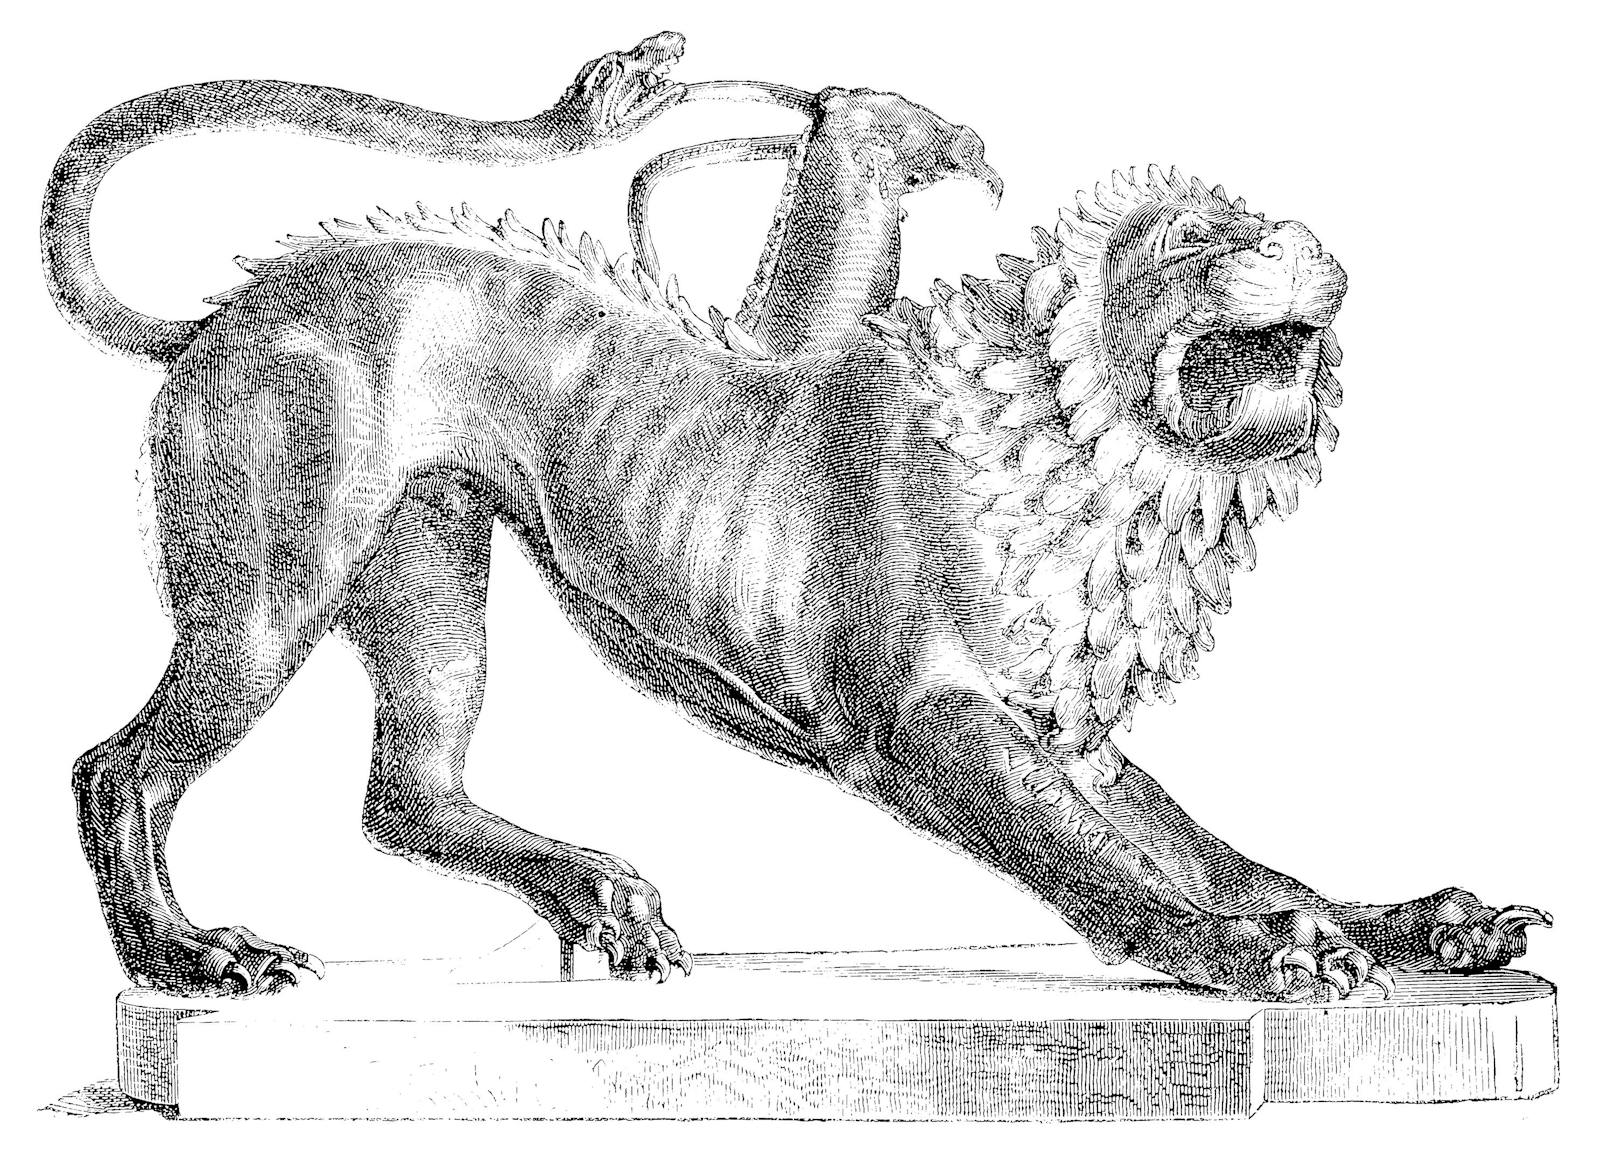 Der Ausdruck "Chimäre" kommt eigentlich aus der griechischen Mythologie und beschreibt ein Mischwesen zwischen Löwe, Schlange und Ziege. <br>